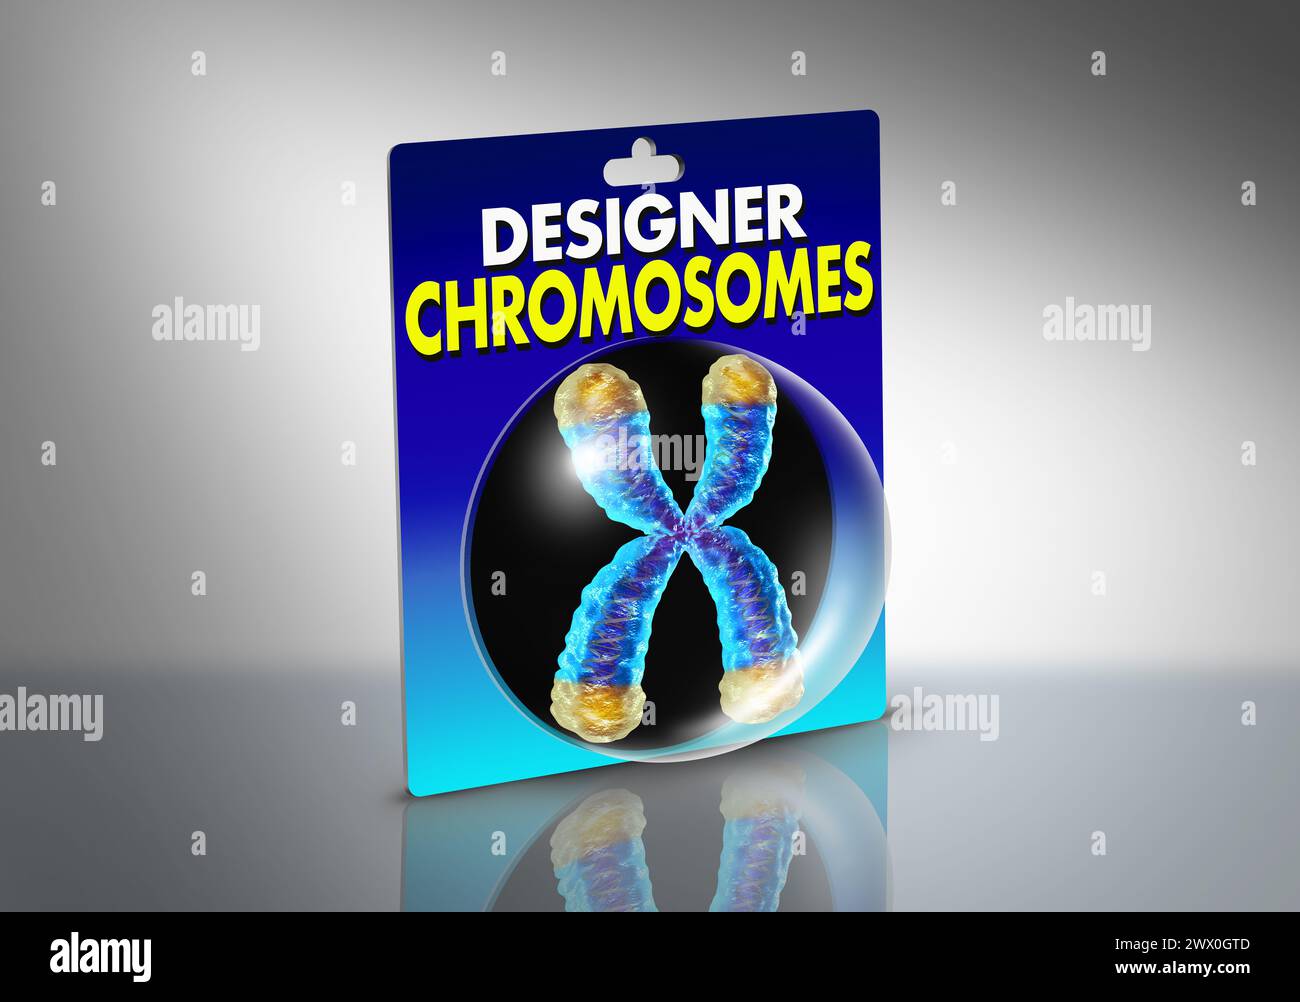 Cromosomi di progettazione e artificialmente ingegnerizzati e sinteticamente creati cromosomi come biologia sintetica con materiale genetico modificato dall'uomo. Foto Stock